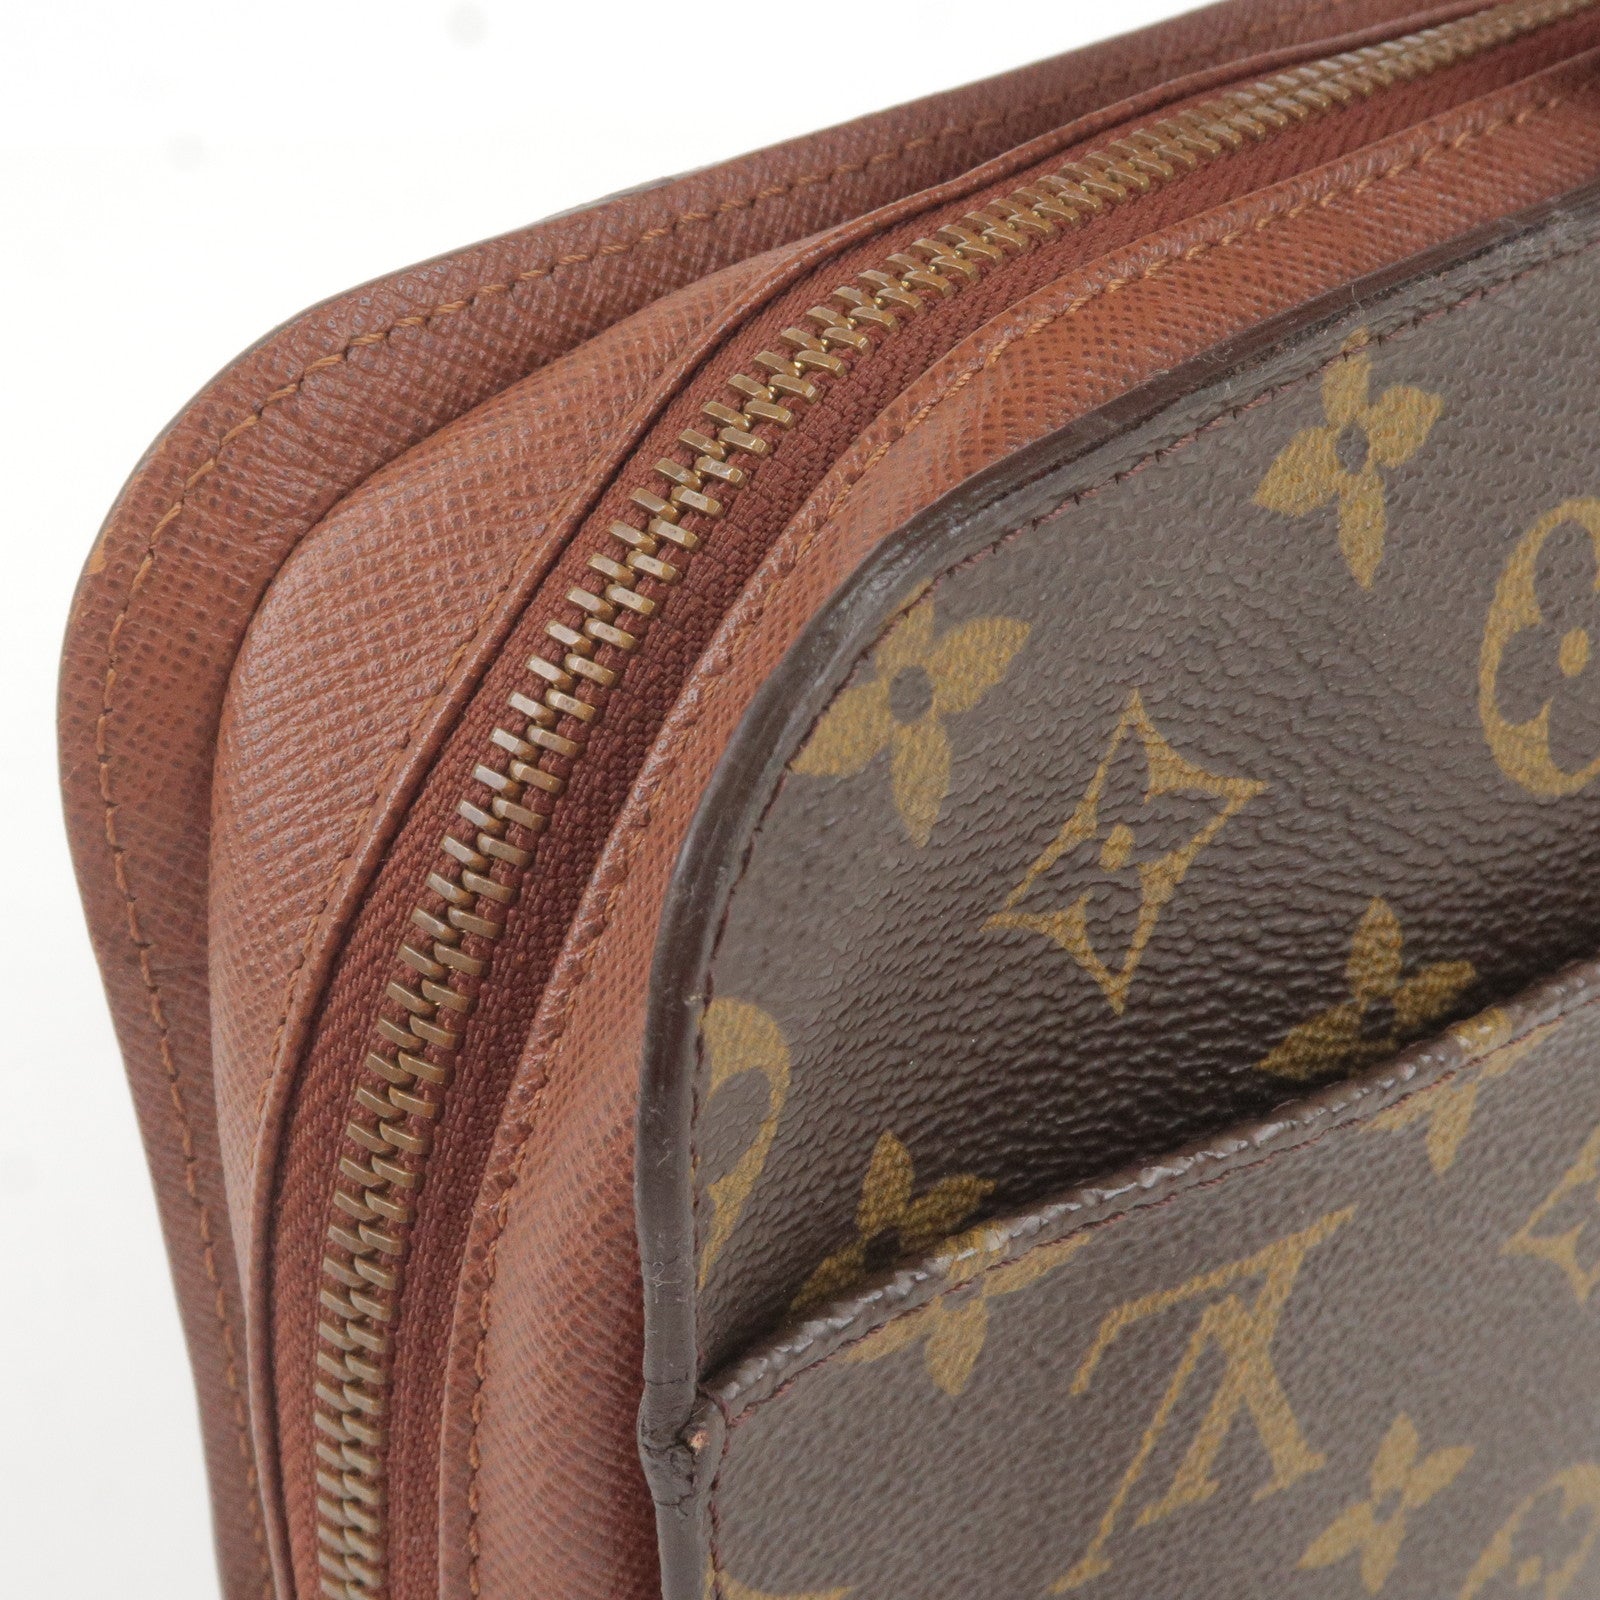 Second Hand Louis Vuitton Trouville Bags